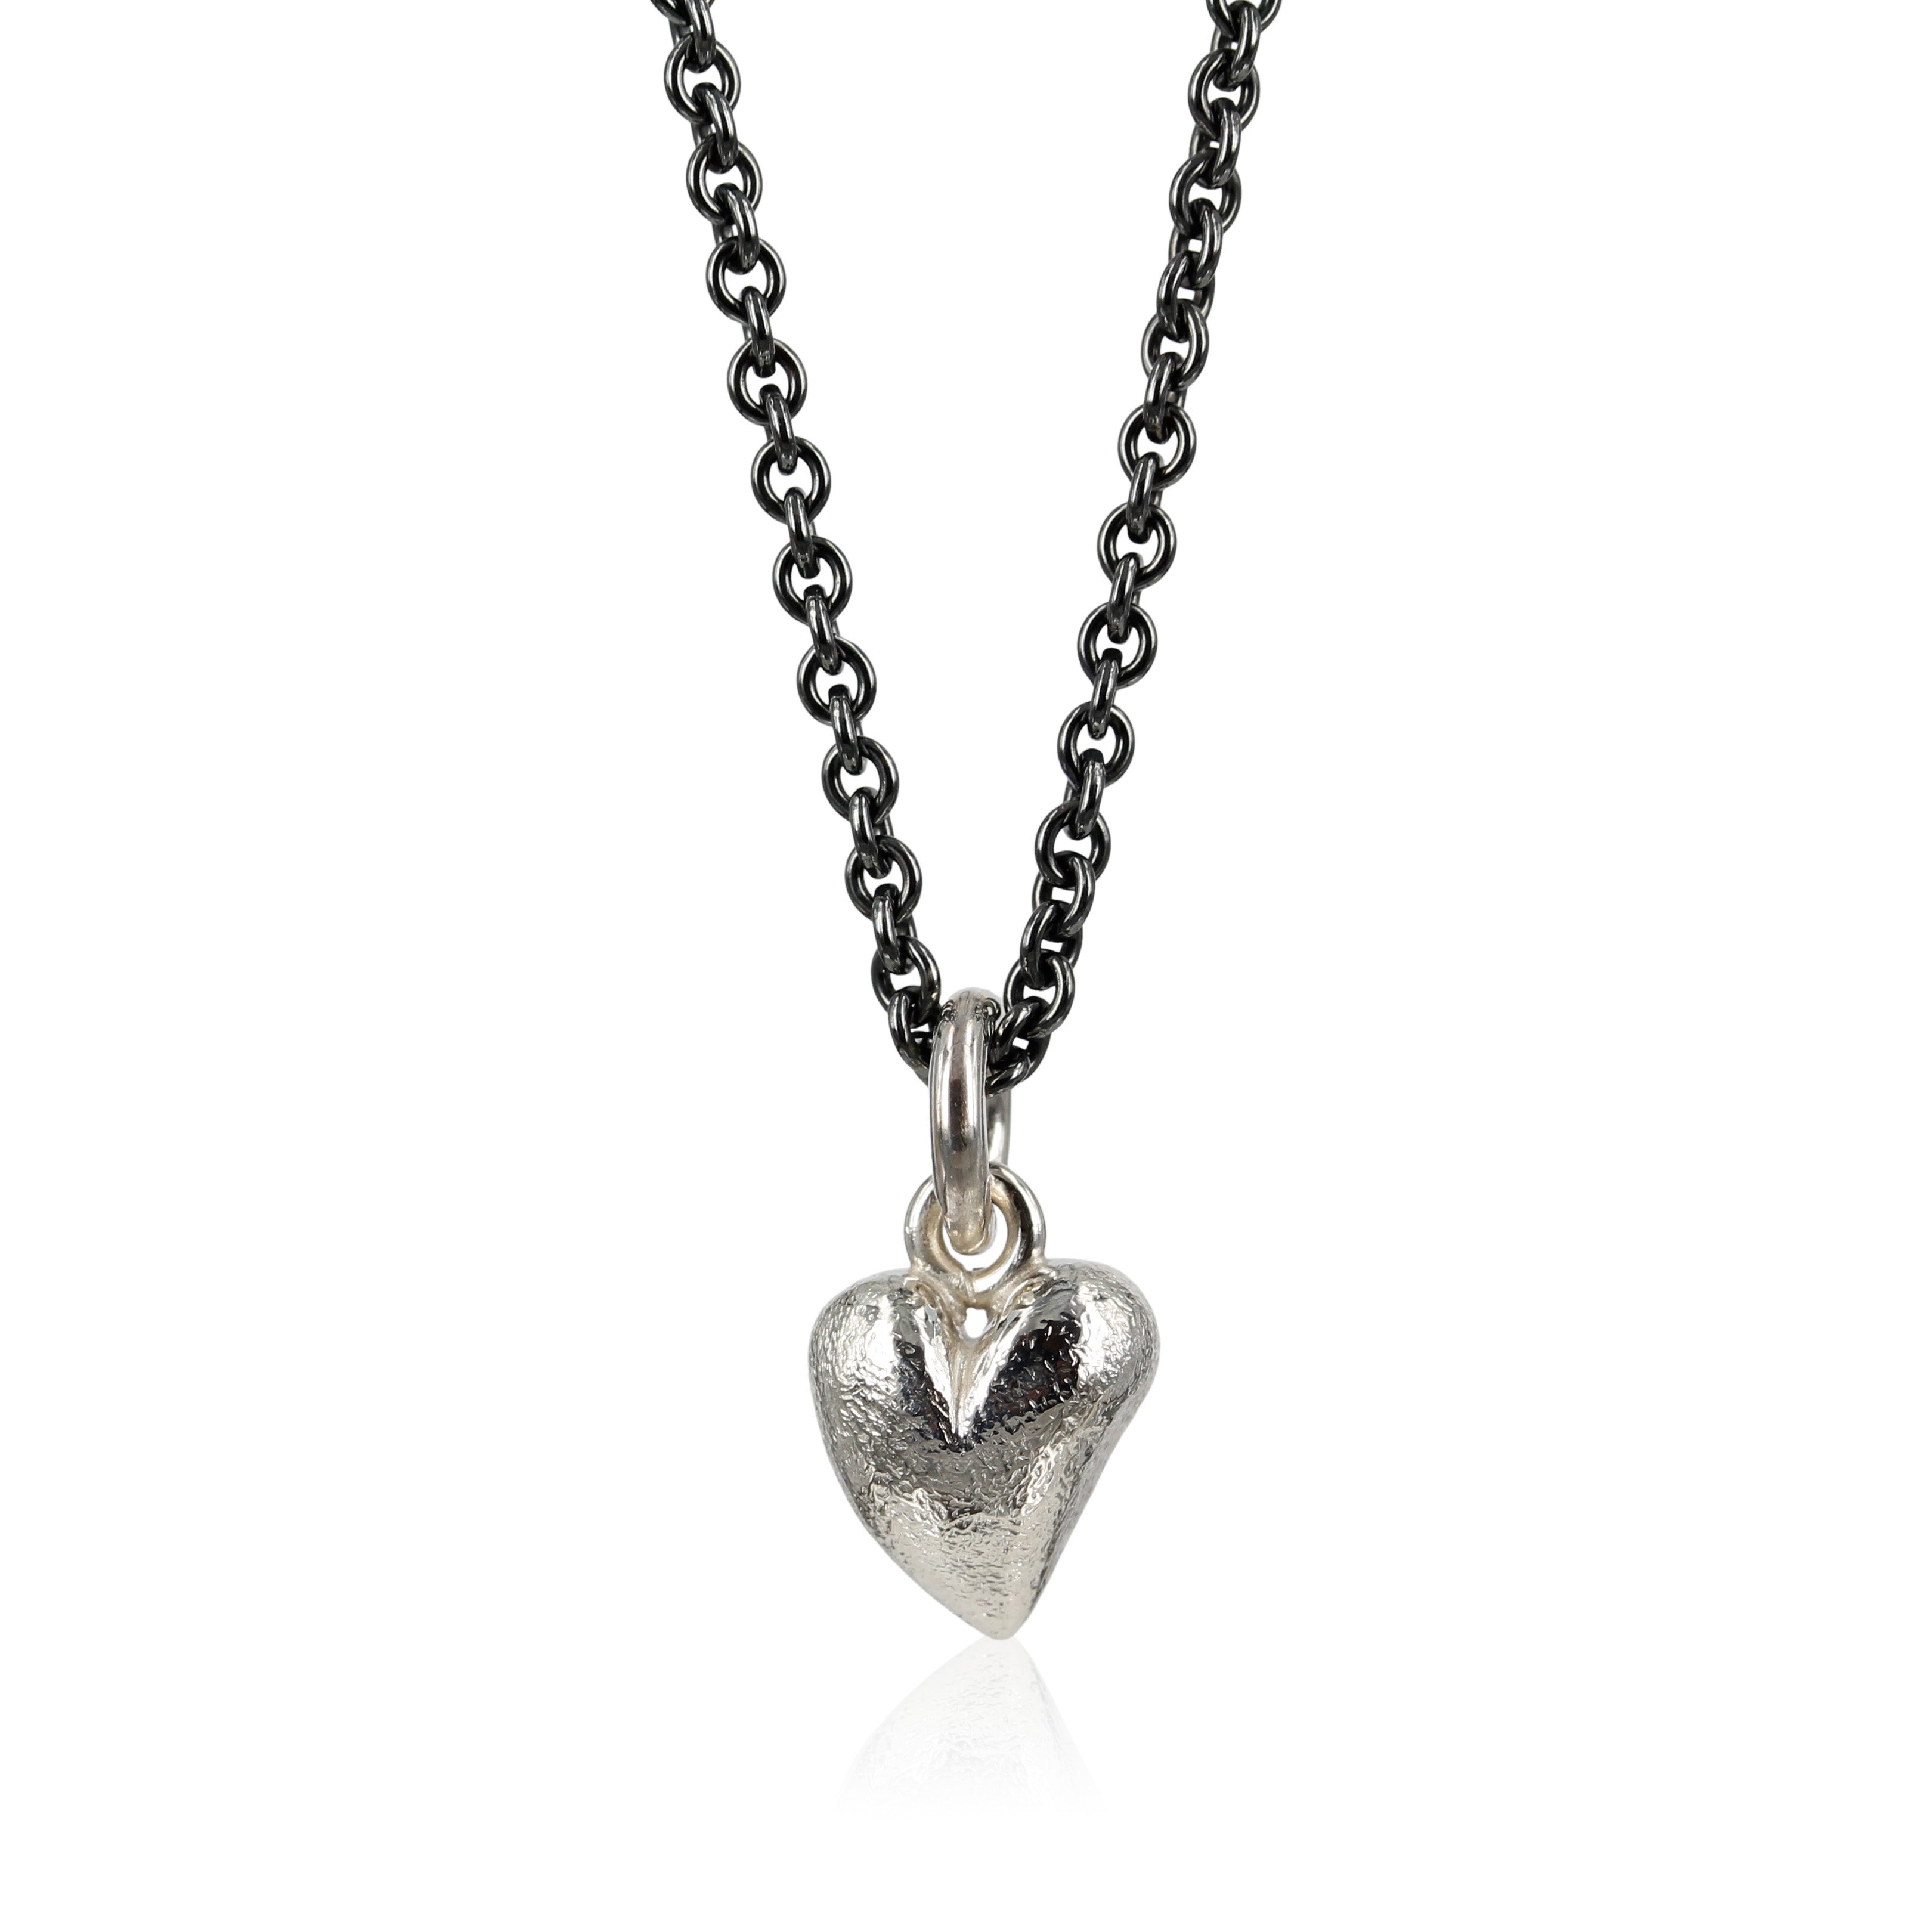 mat sølv - Love - Sølv hjerte vedhæng -  Lille fint sølv hjerte, designet med skæve buer i massiv sølv. Vedhænget er fint i en enkel kæde om halsen, eller som charm i et armbånd.